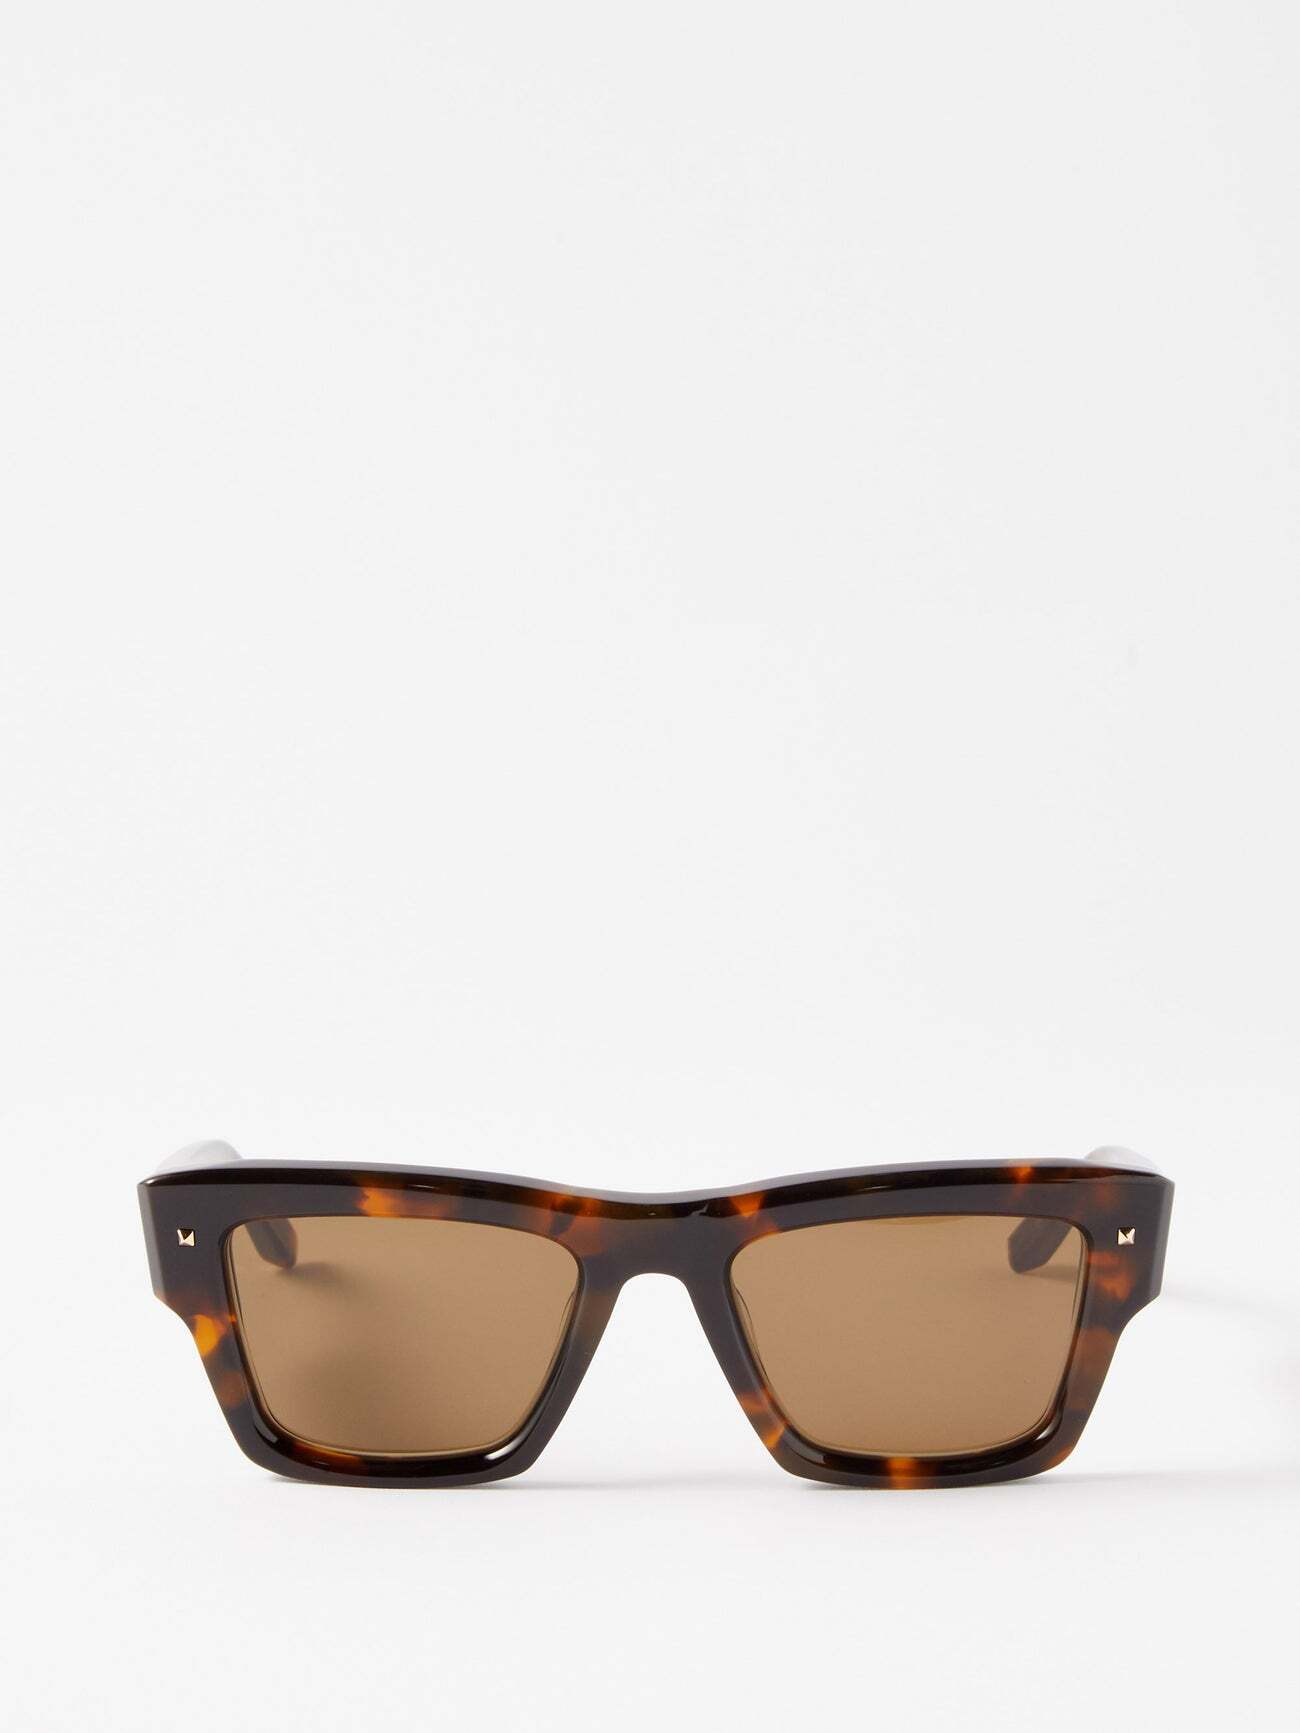 Valentino Eyewear - Xxii Square Tortoiseshell-acetate Sunglasses - Womens - Brown Multi